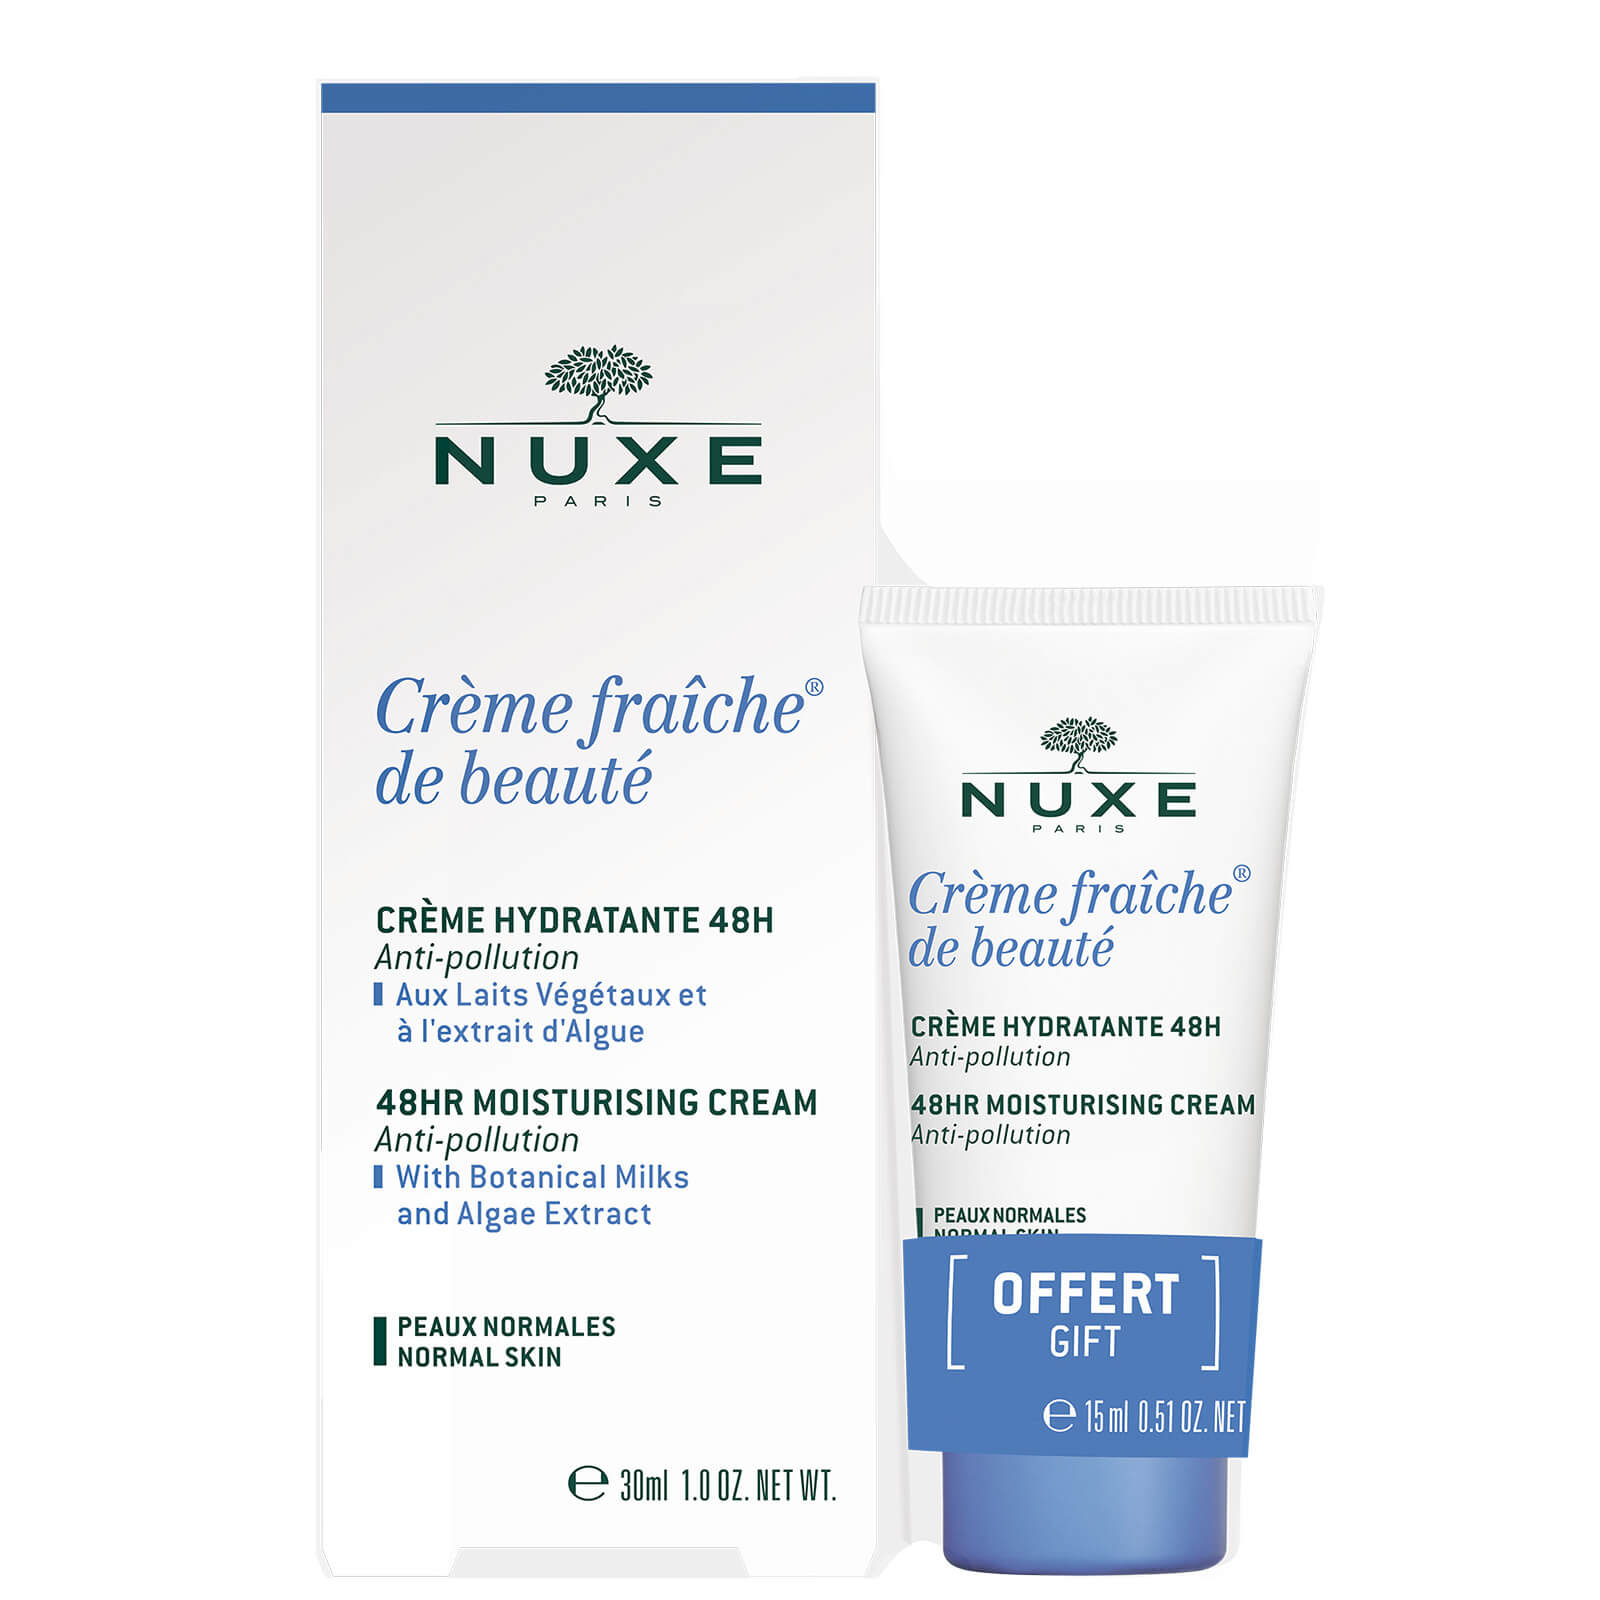 NUXE Crème Fraiche de Beauté 48hr Moisturising Cream for Normal Skin 30ml with 15ml Gift (Worth £25.50)